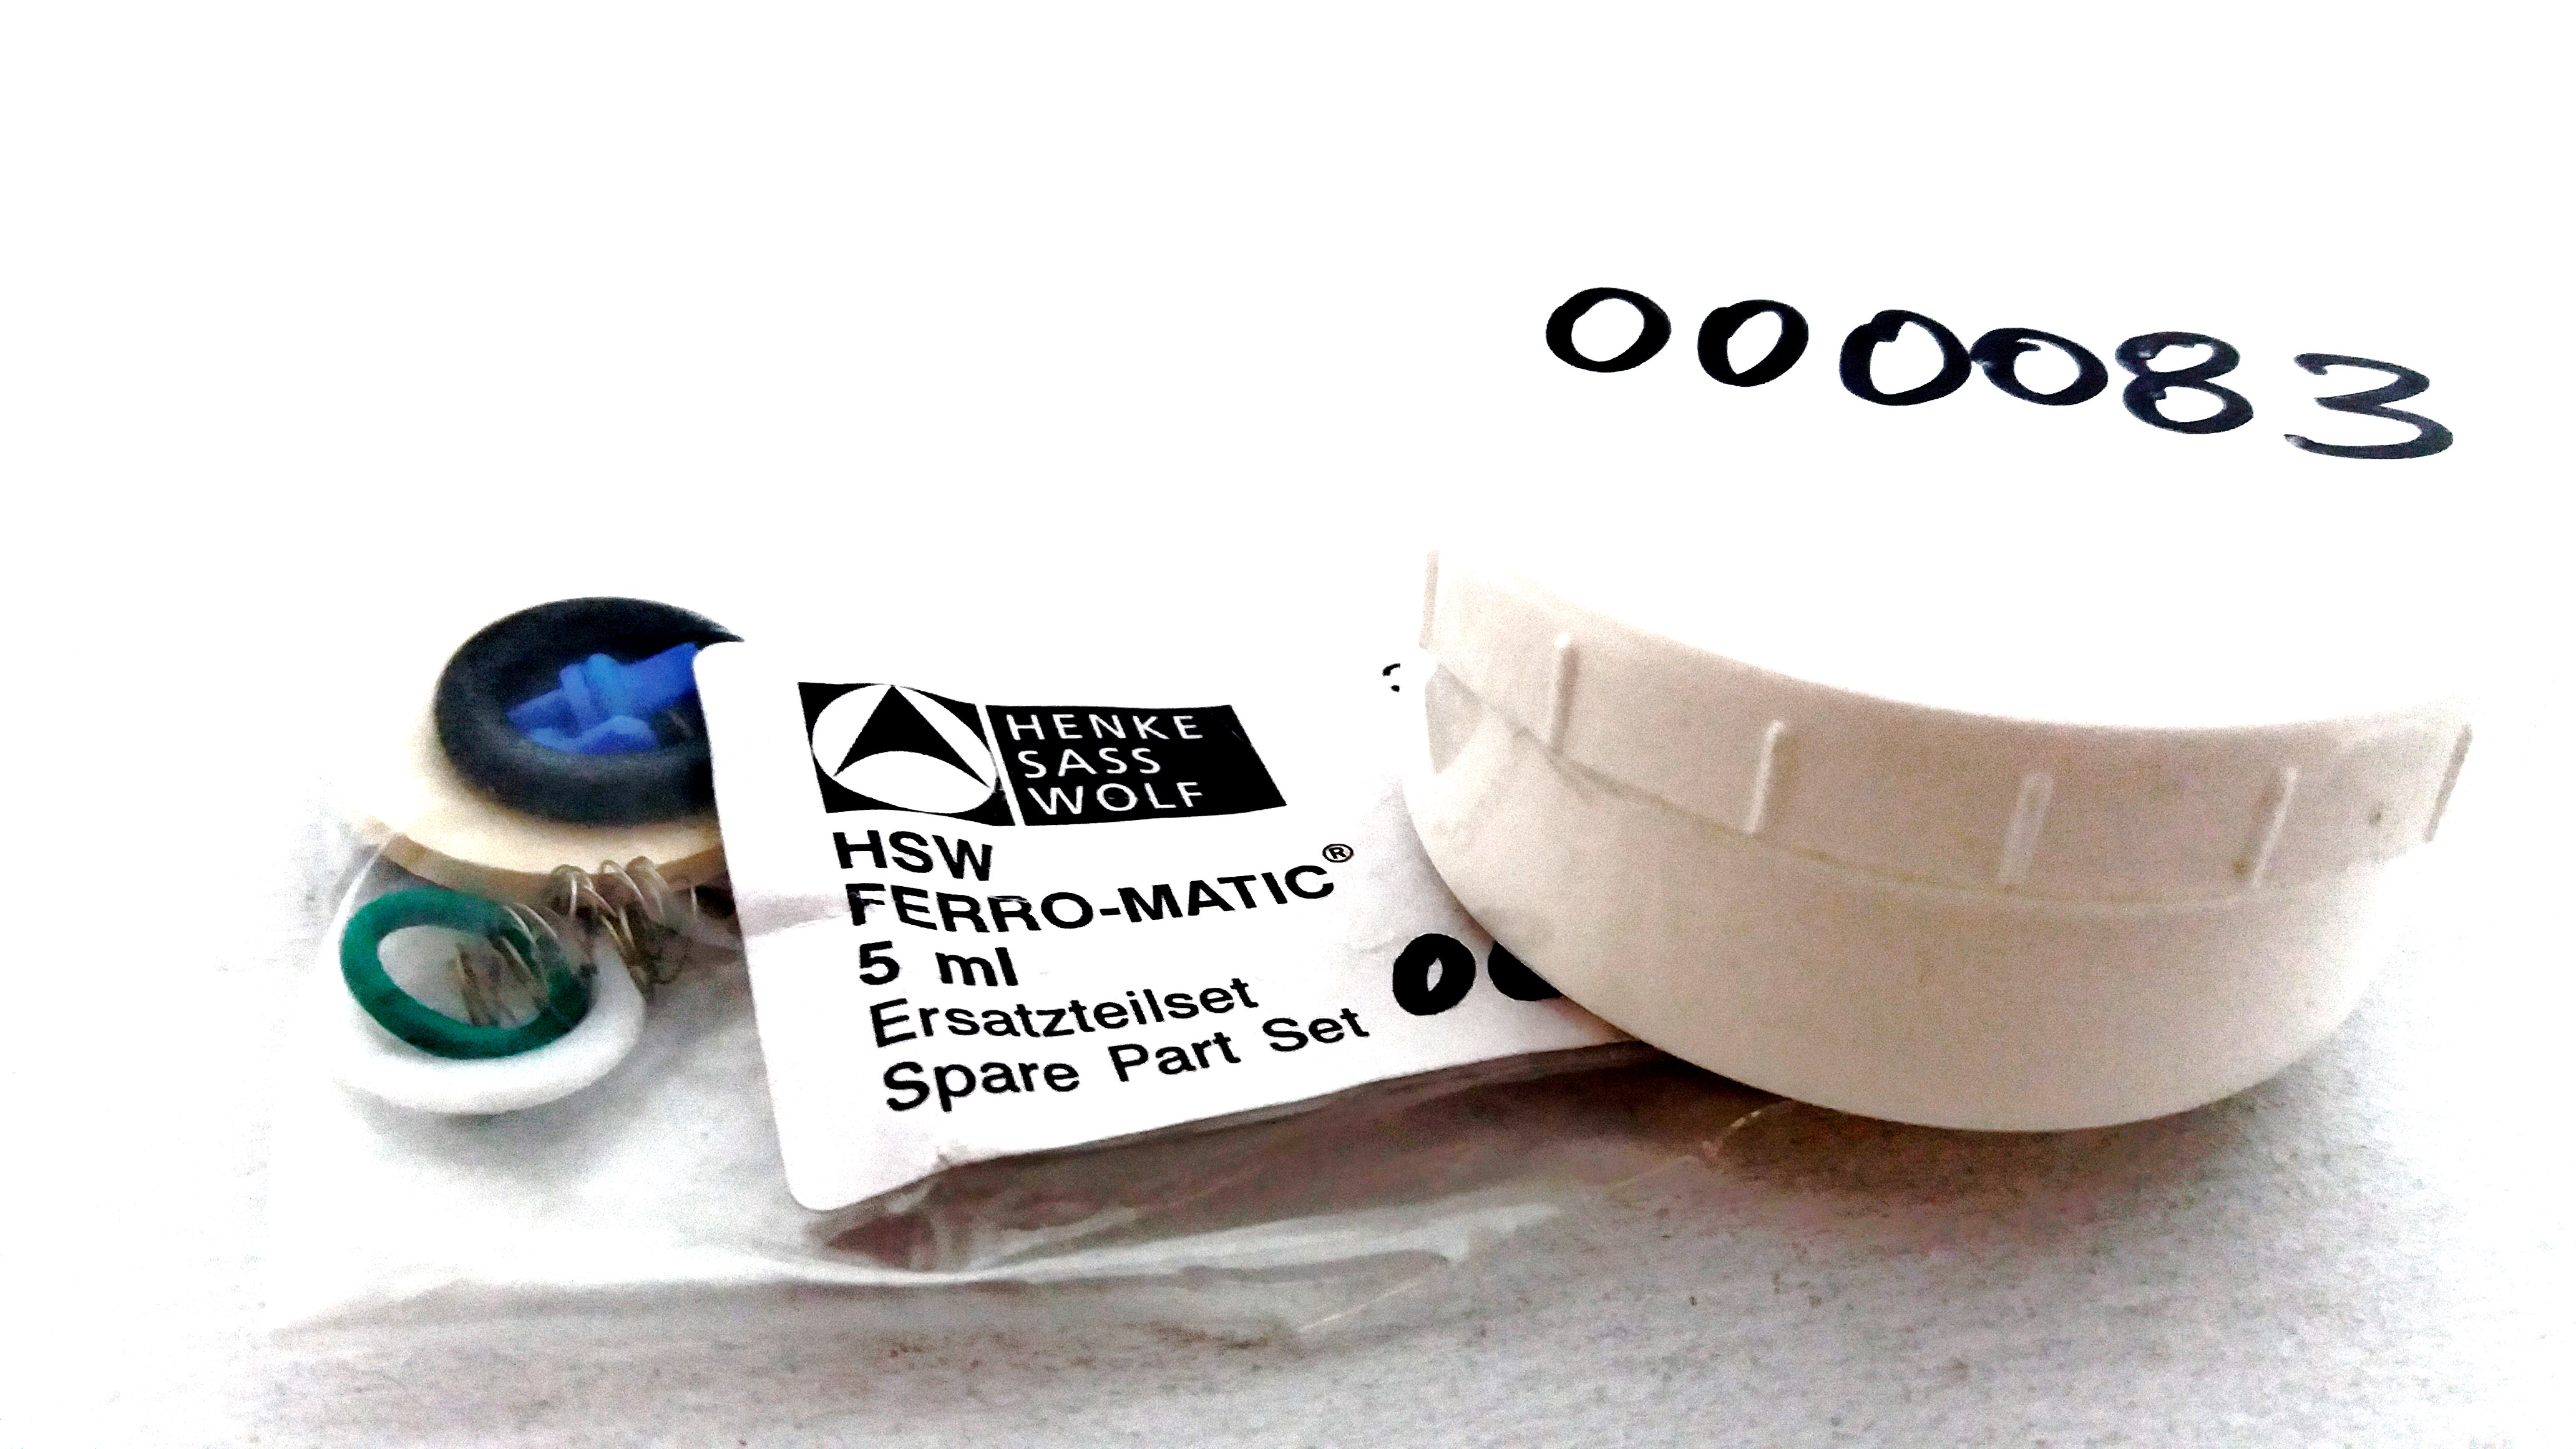 Ανταλλακτικά σετ για σύριγγα Ferro-Matic 5 ml